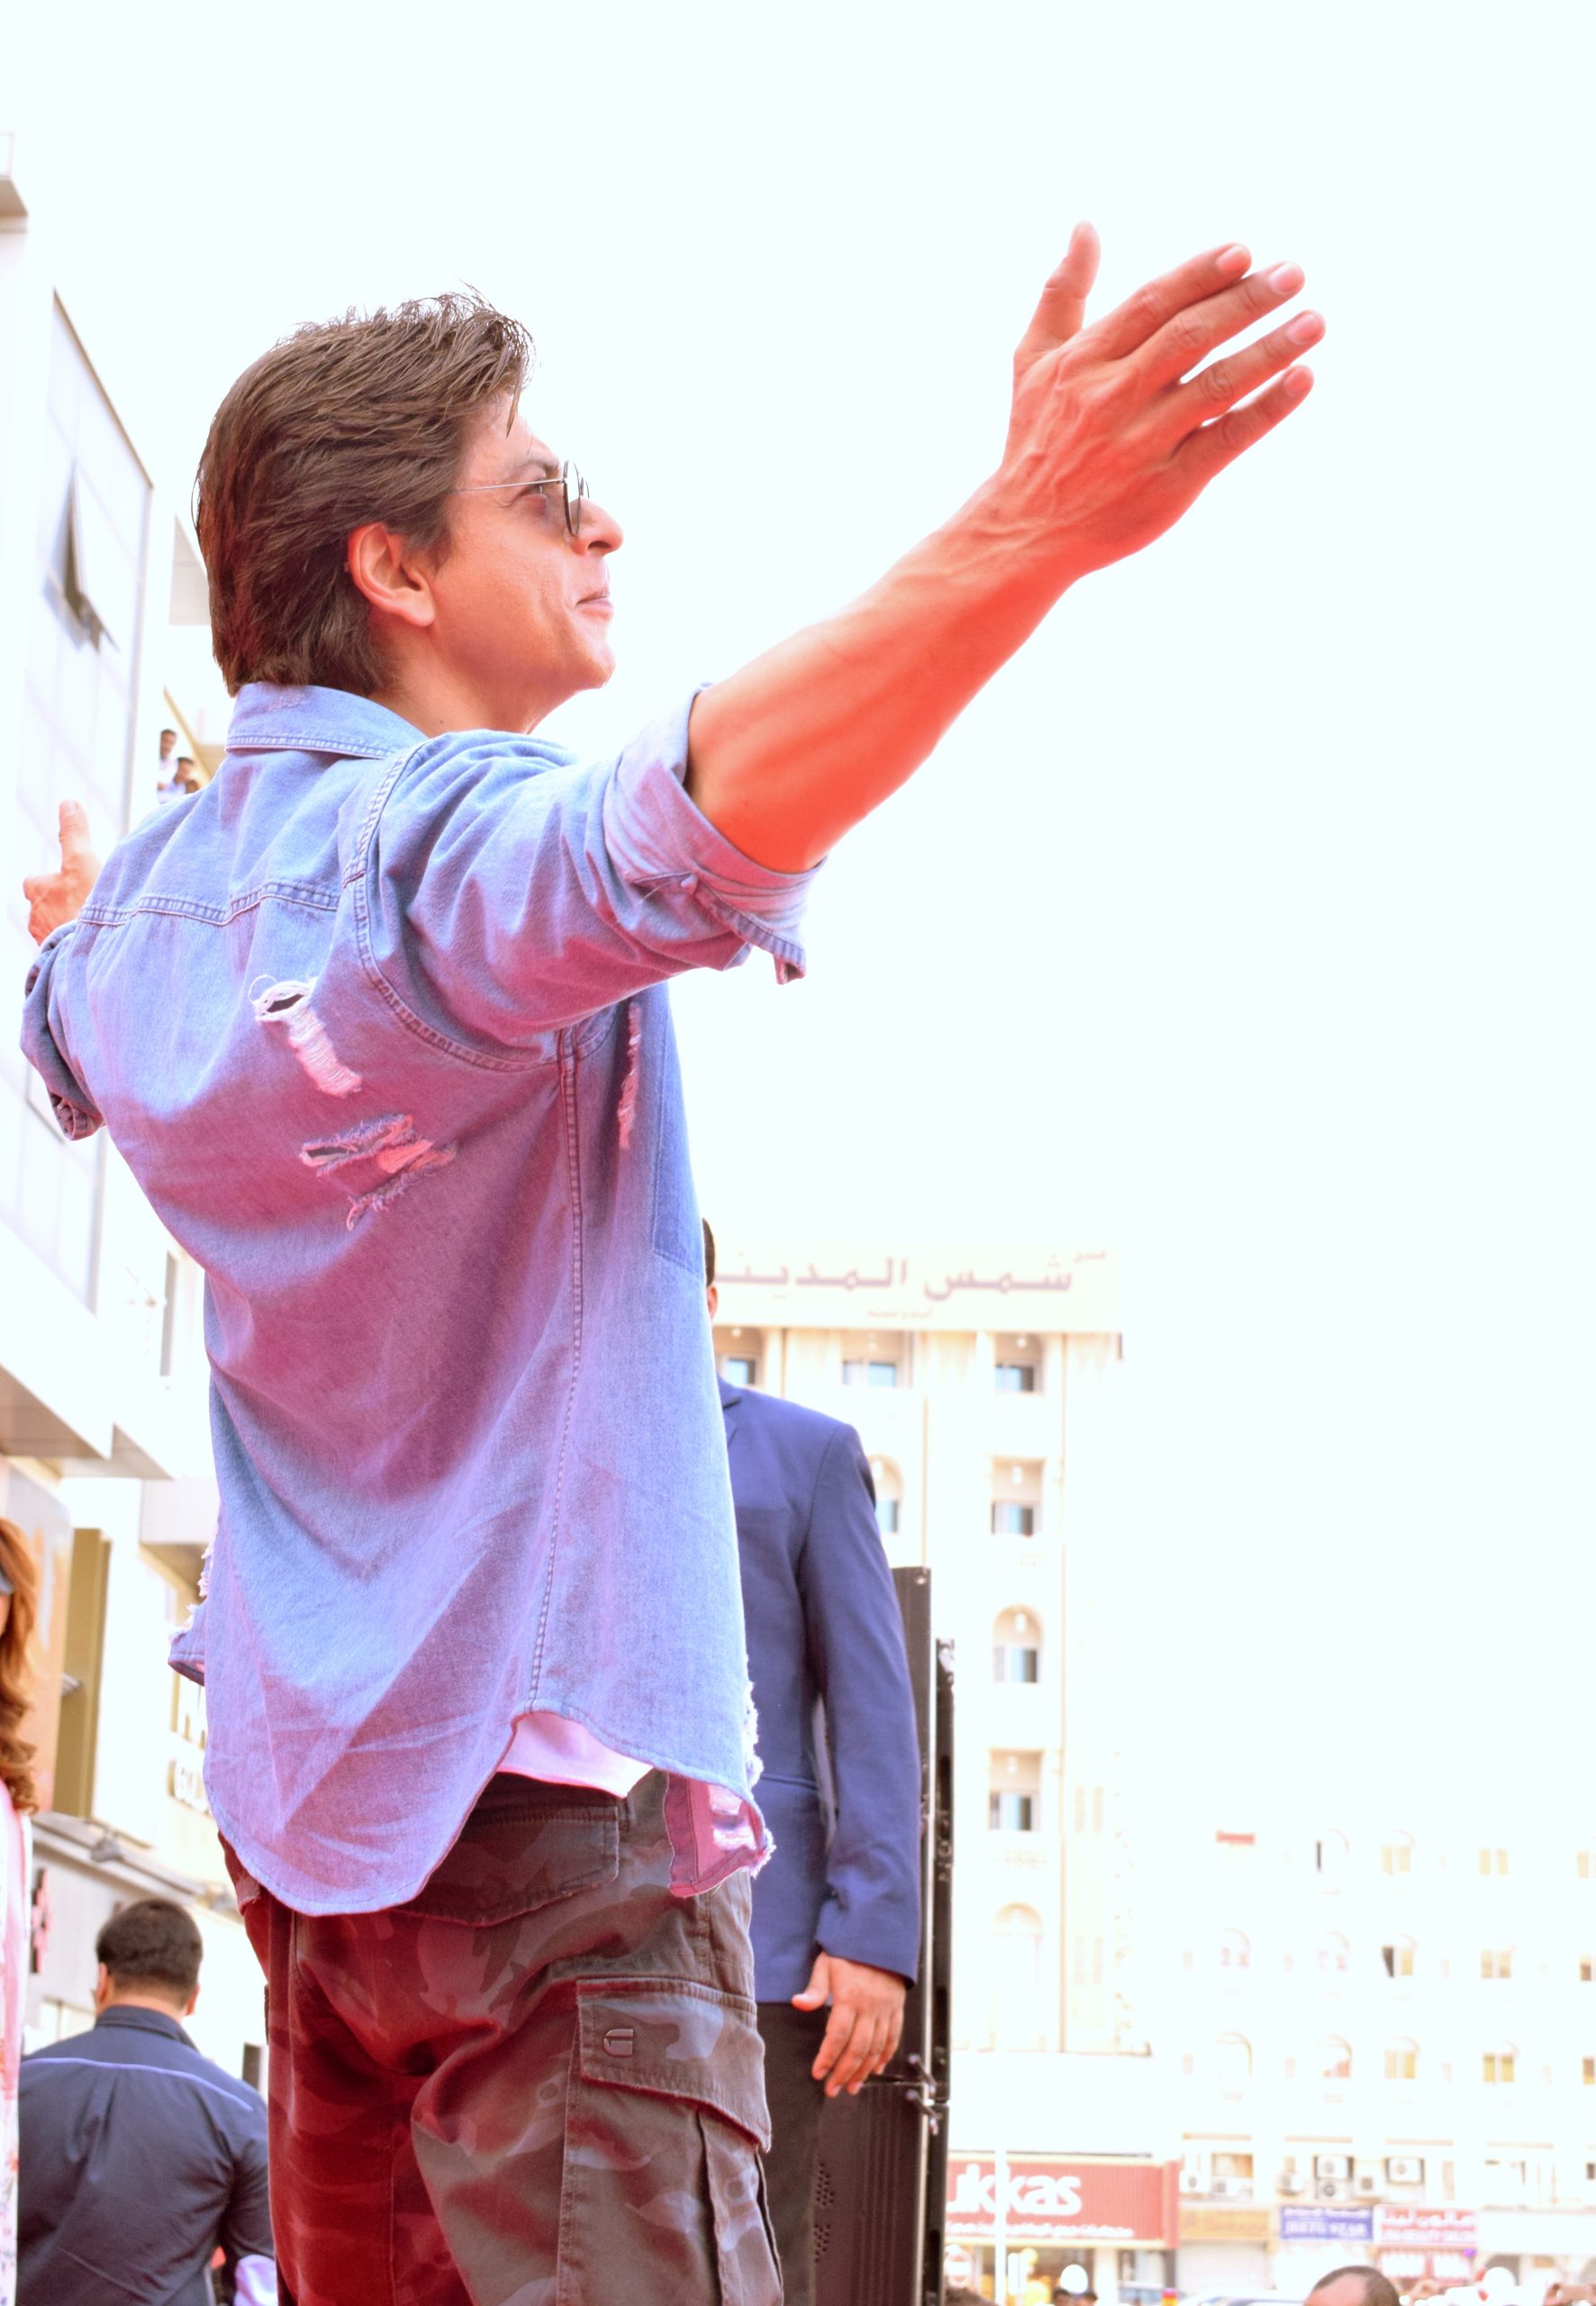 SRK dances to'Dunki song O Maahi, recreates his open arms pose in Dubai -  India Today